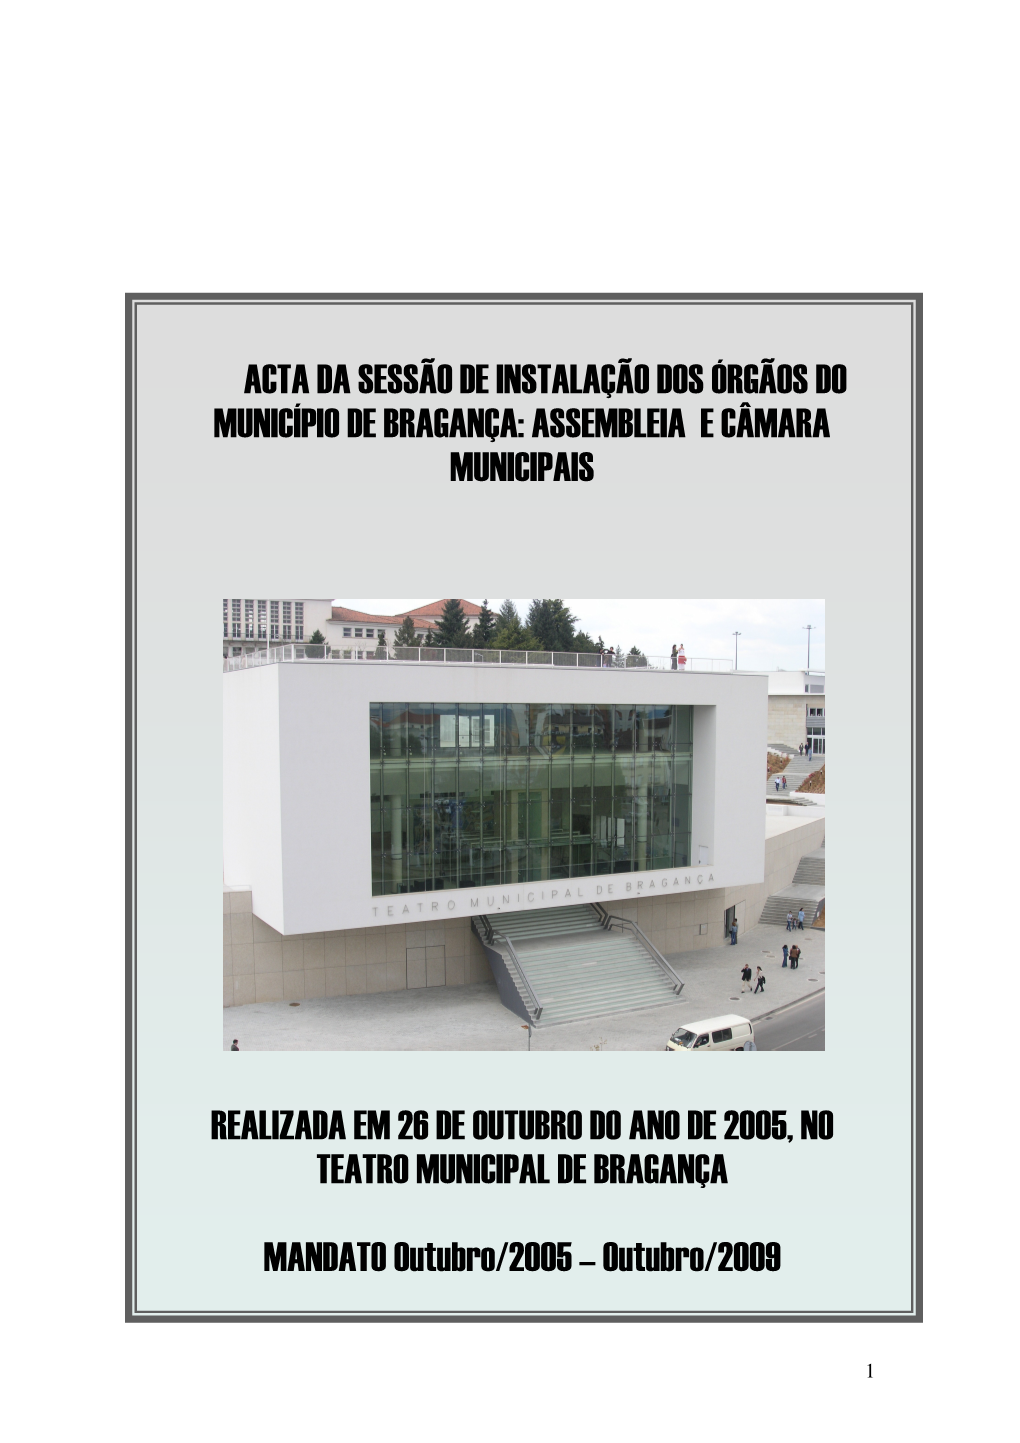 Acta Da Sessão De Instalação Dos Órgãos Do Município De Bragança: Assembleia E Câmara Municipais Realizada Em 26 De